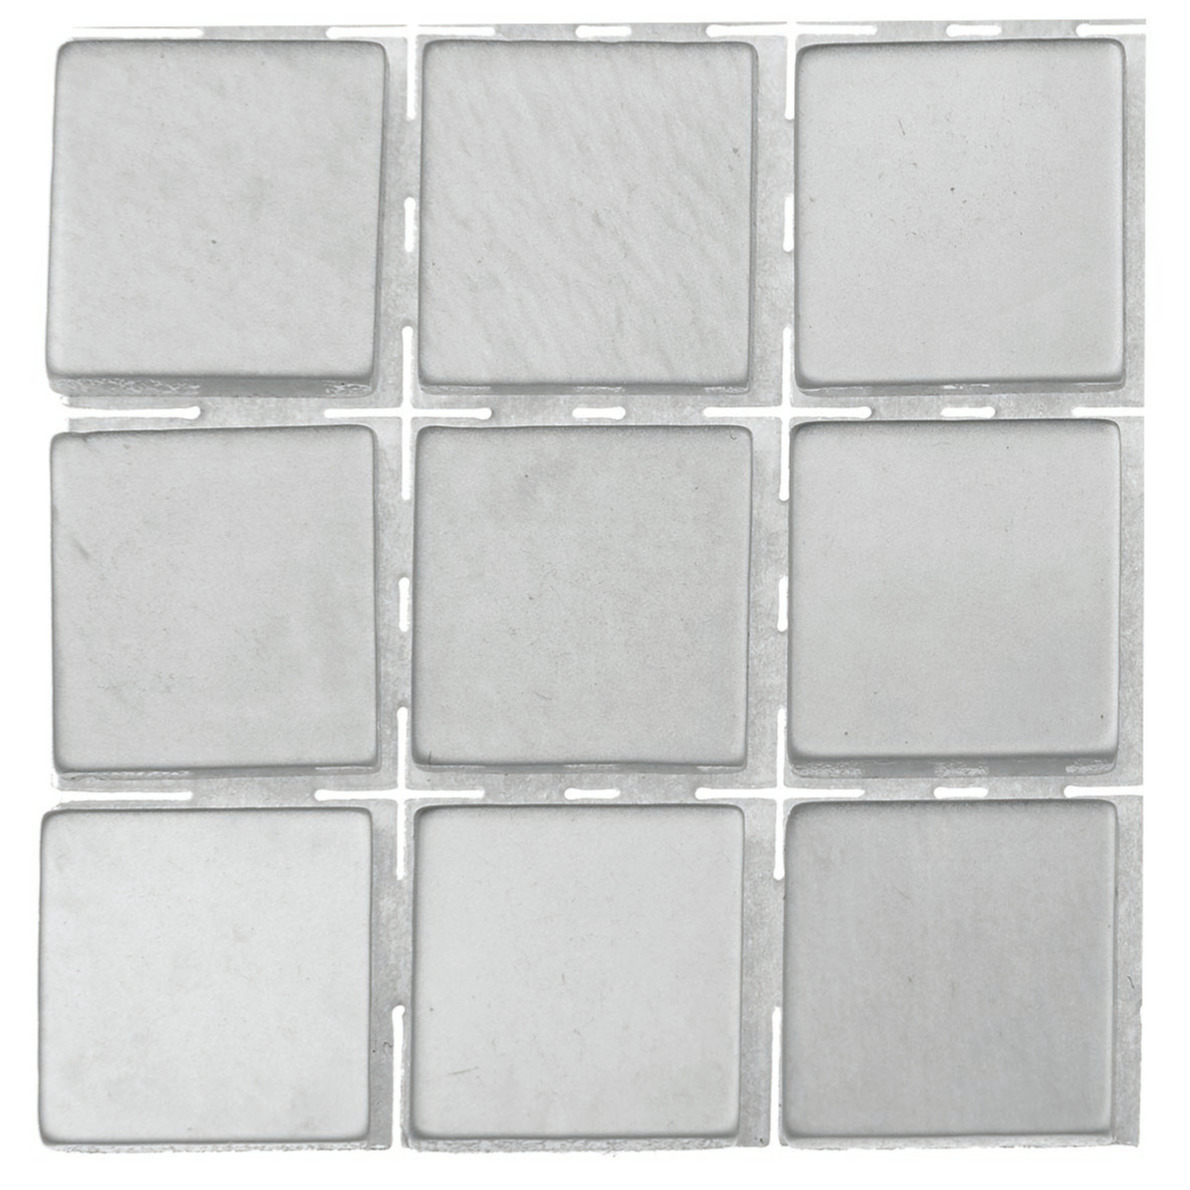 189x stuks mozaieken maken steentjes-tegels kleur grijs 10 x 10 x 2 mm